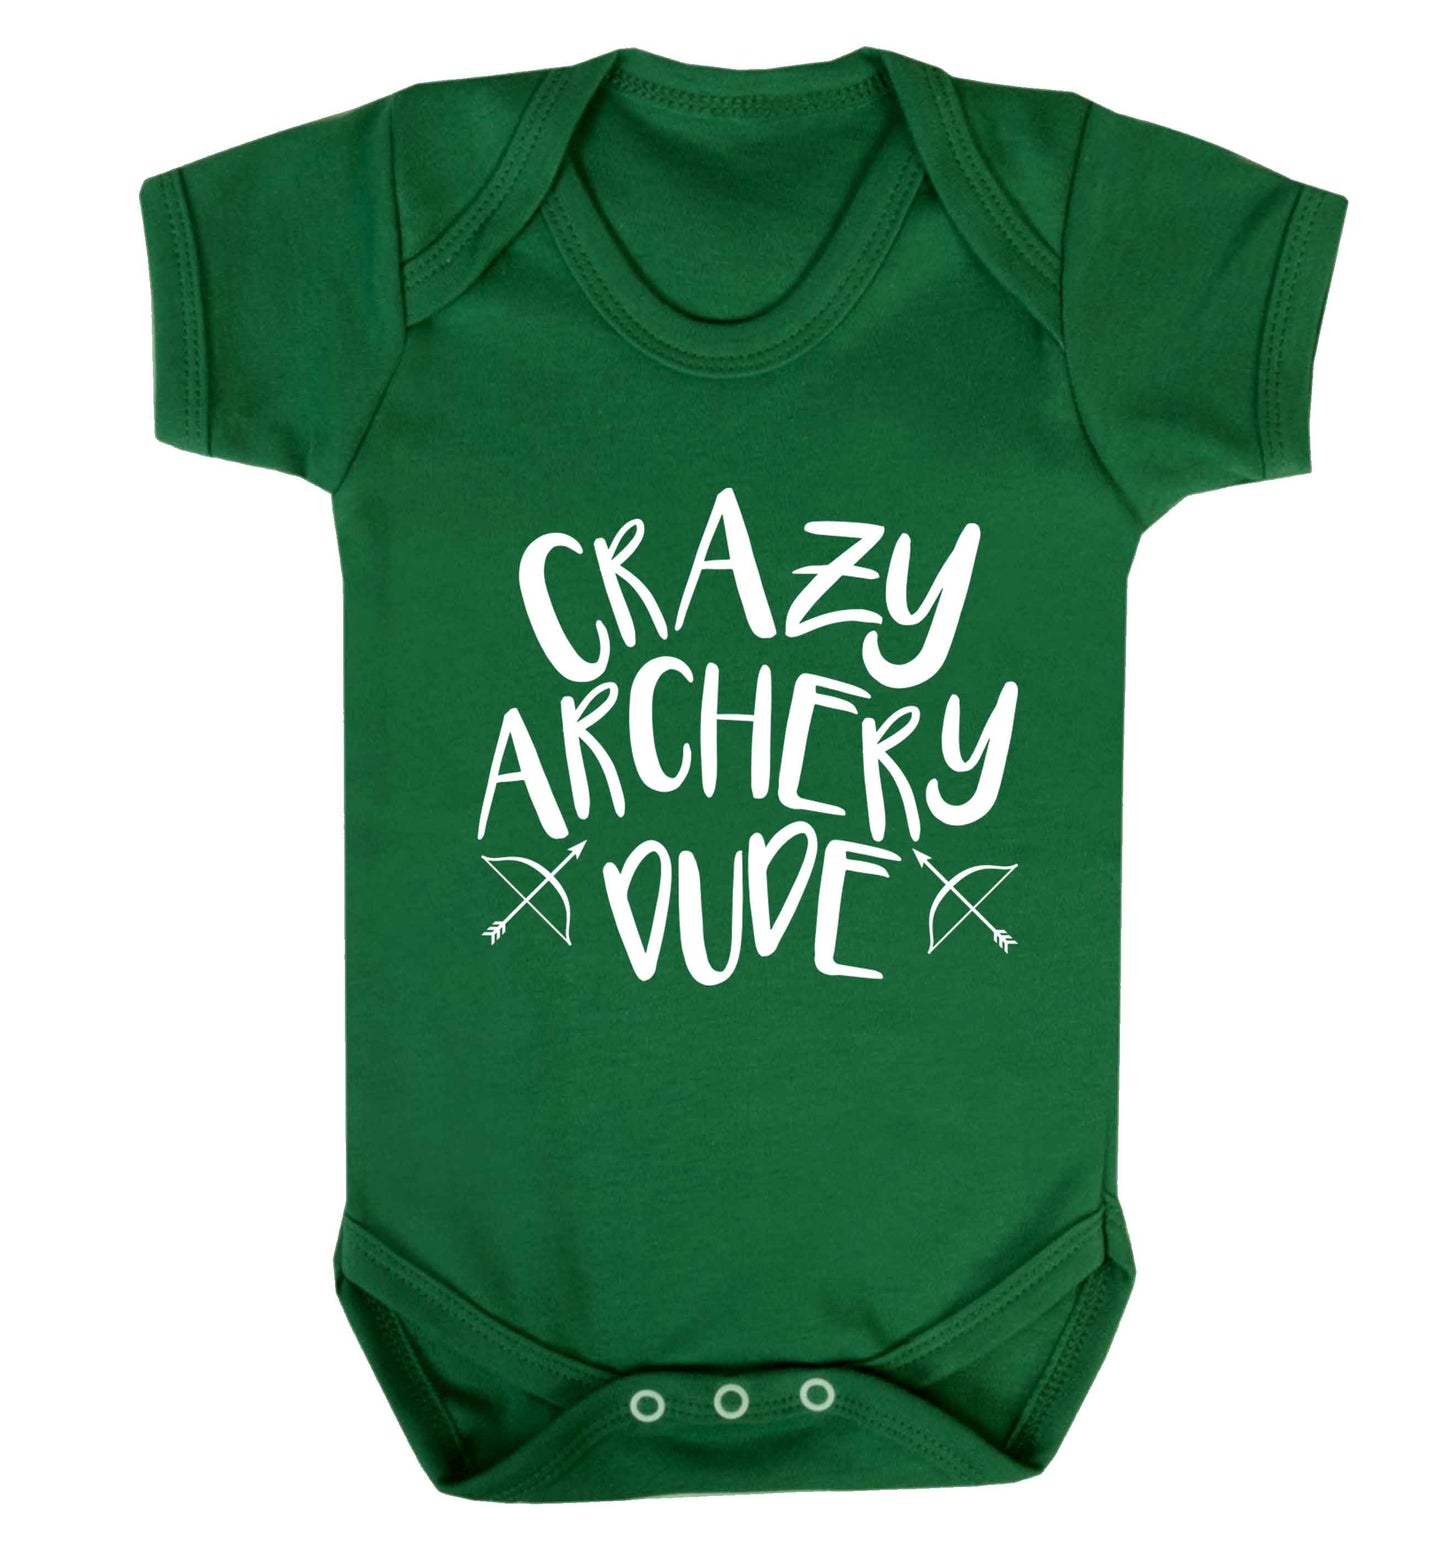 Crazy archery dude Baby Vest green 18-24 months